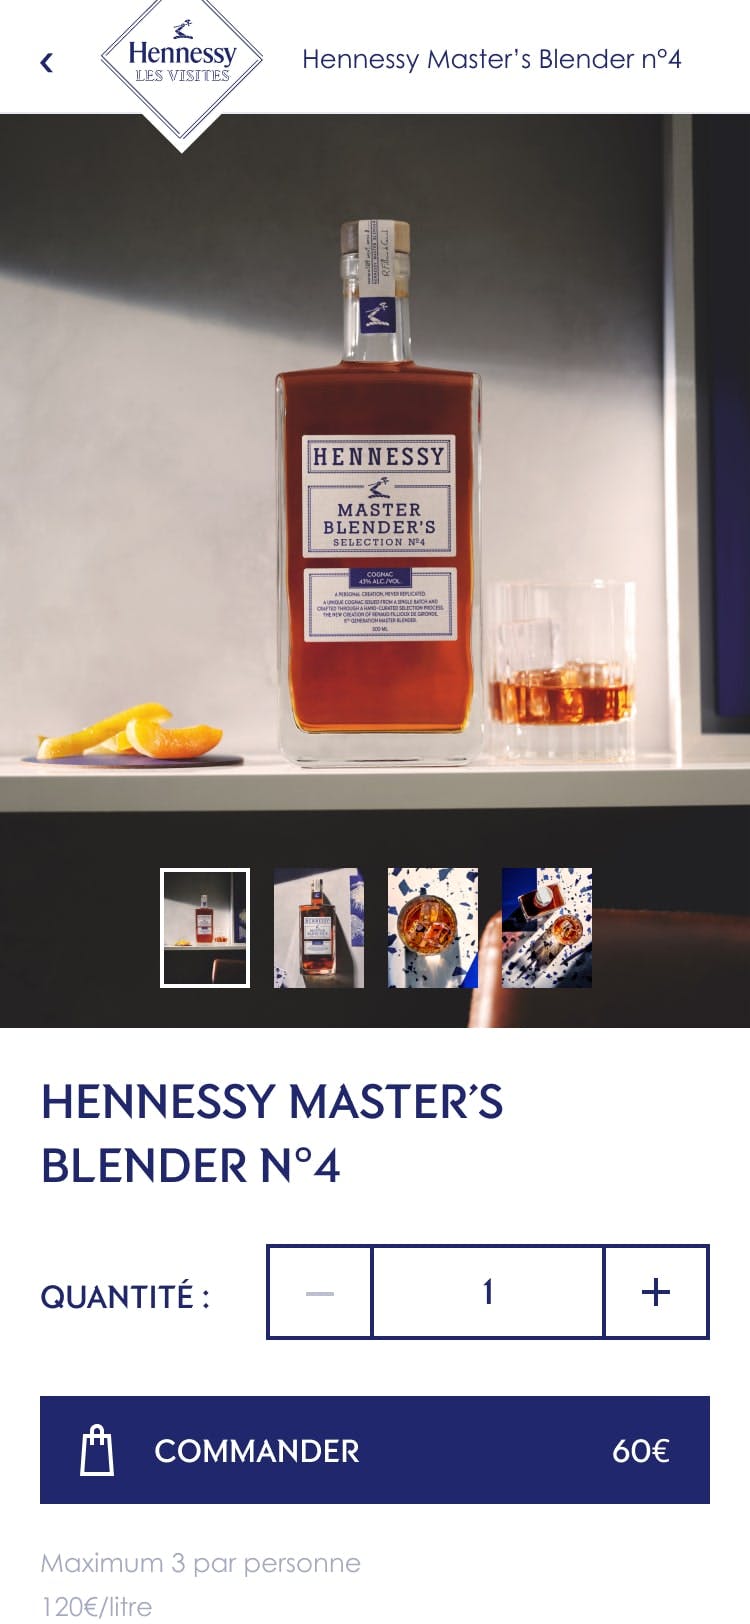 Design of Hennessy Master Blender's N°4 e-commerce platform 